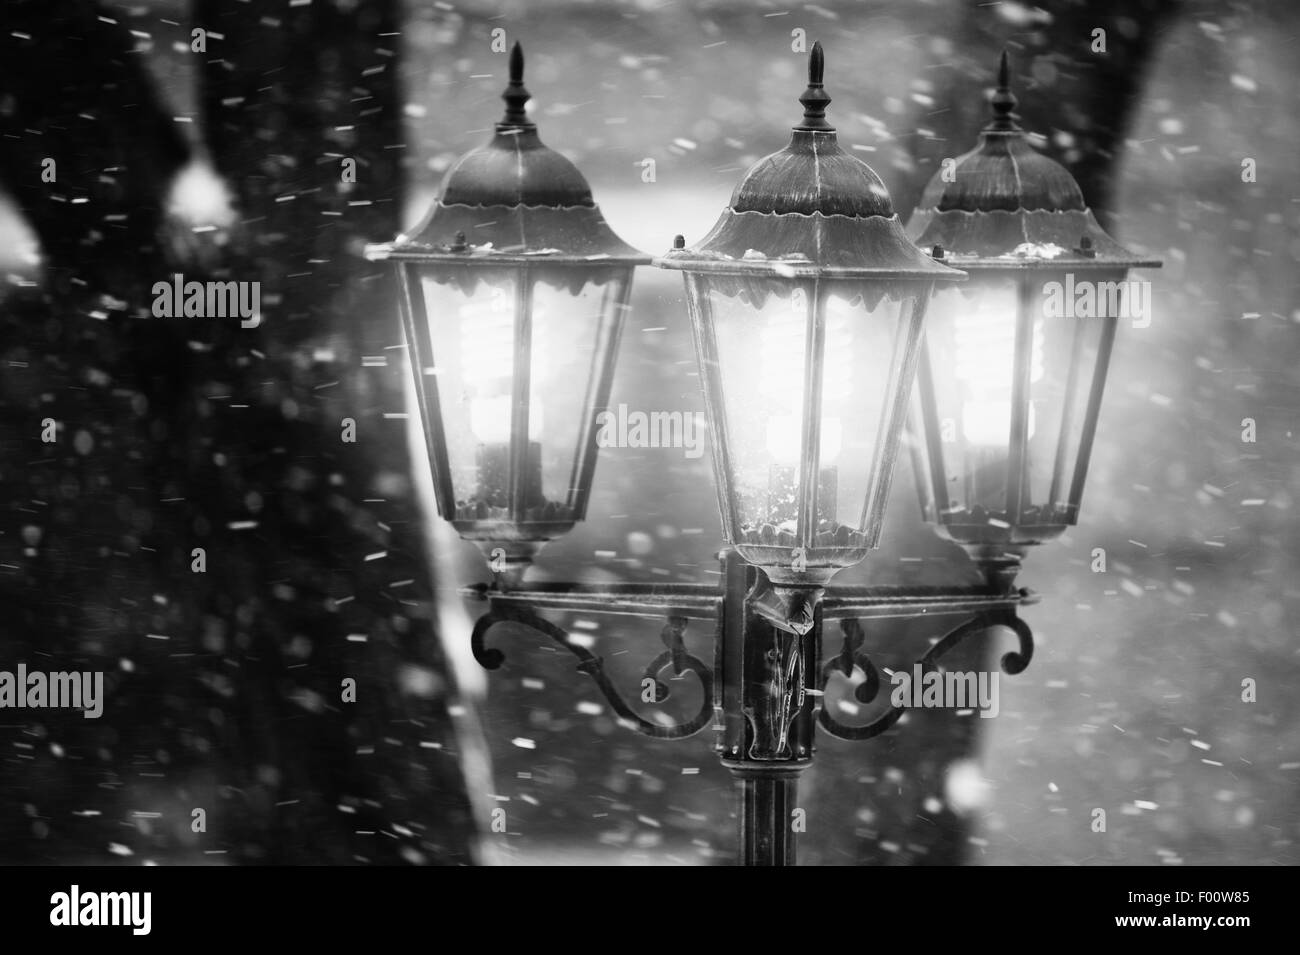 Lampione in inverno. Foto in bianco e nero Foto Stock